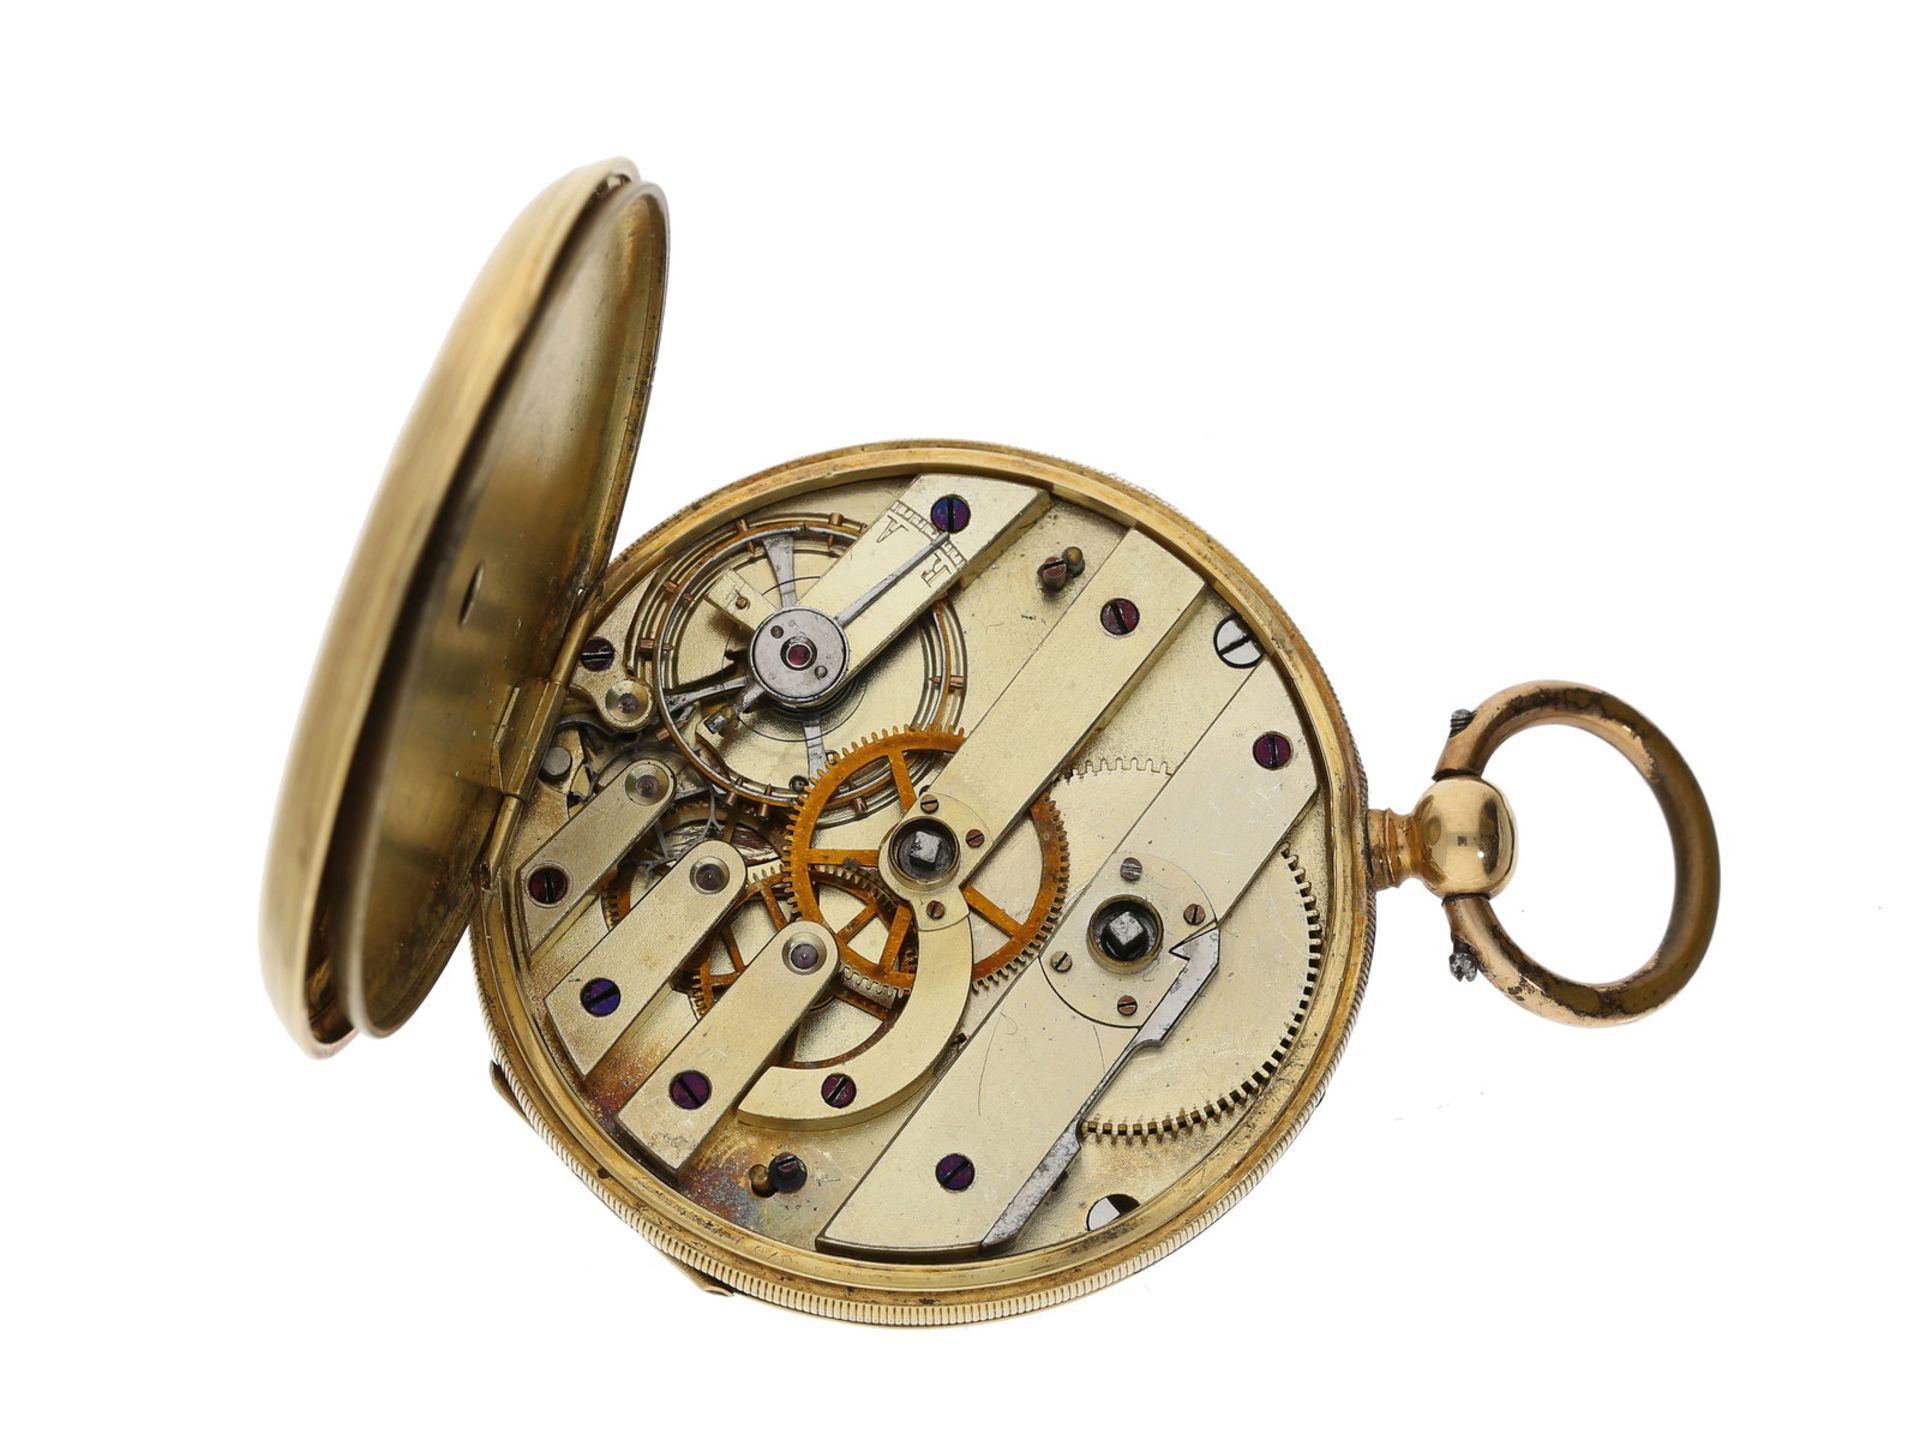 Taschenuhr: sehr schöne 18K Goldlepine mit graviertem Zifferblatt, maritimes Motiv, frühes Anke - Bild 3 aus 3